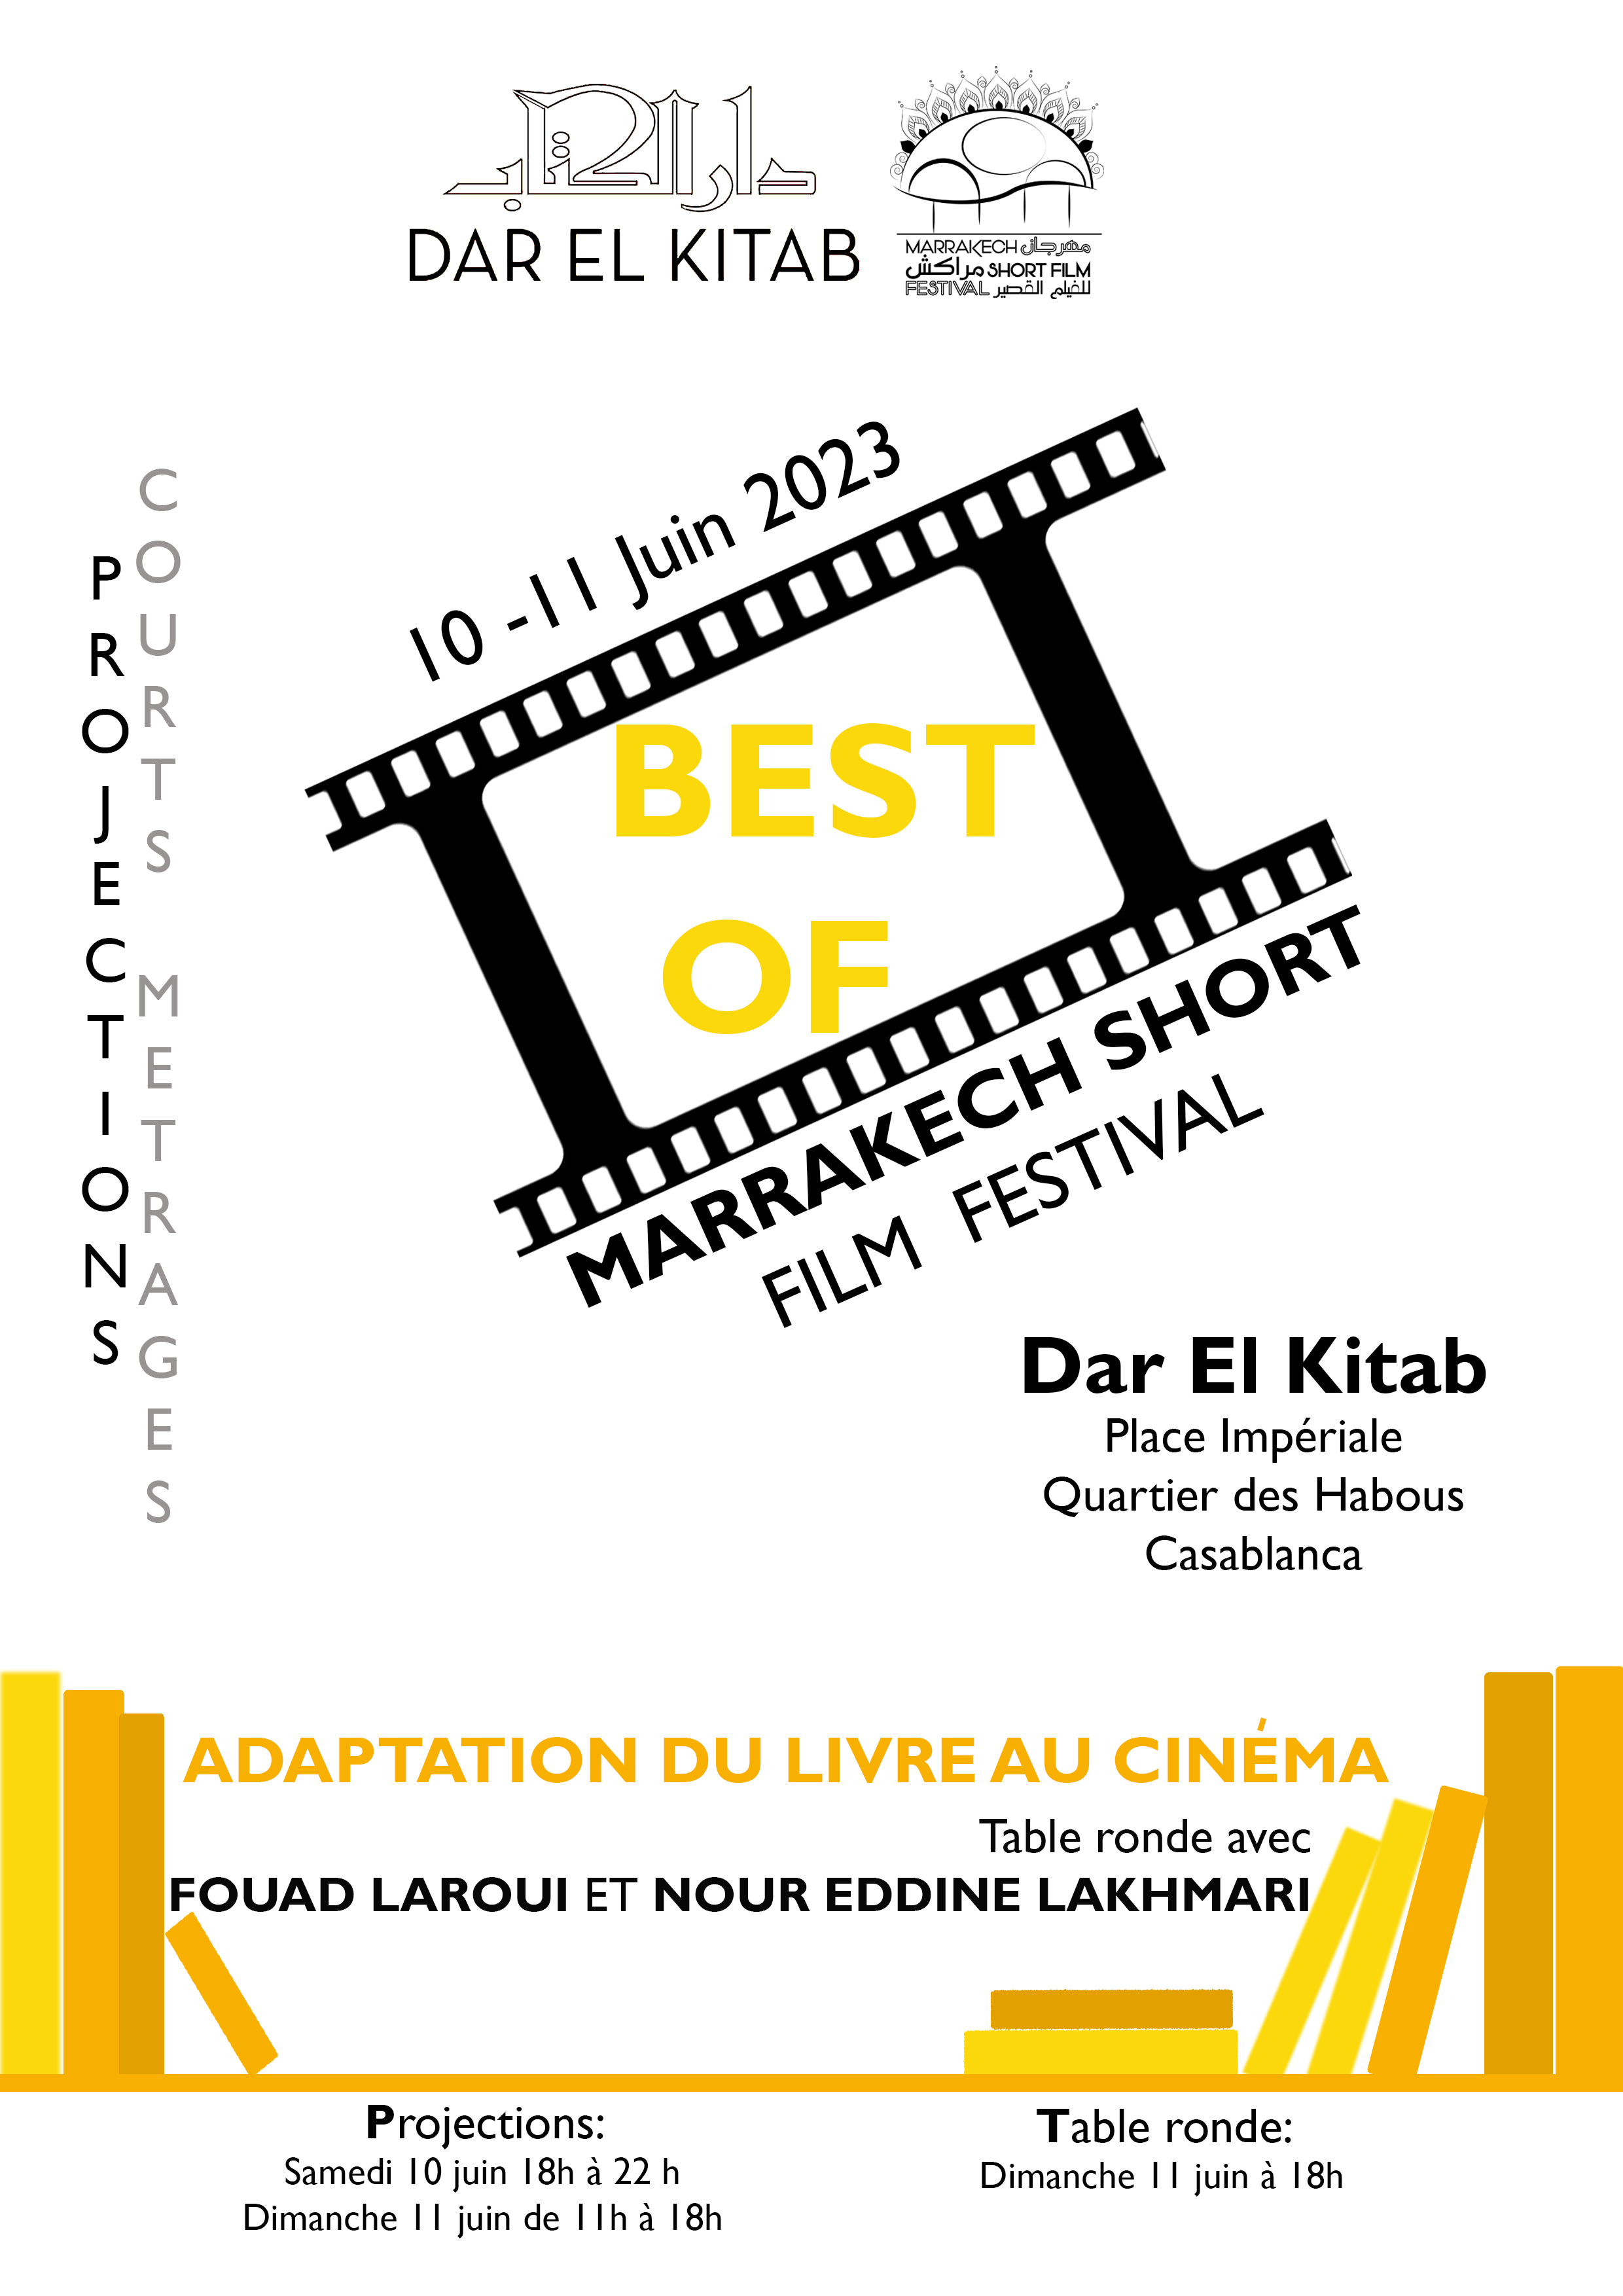 Le Marrakech Short Film Festival rassemble Fouad Laroui et Nour Eddine Lakhmari autour d'une table ronde sur l'adaptation cinématographique